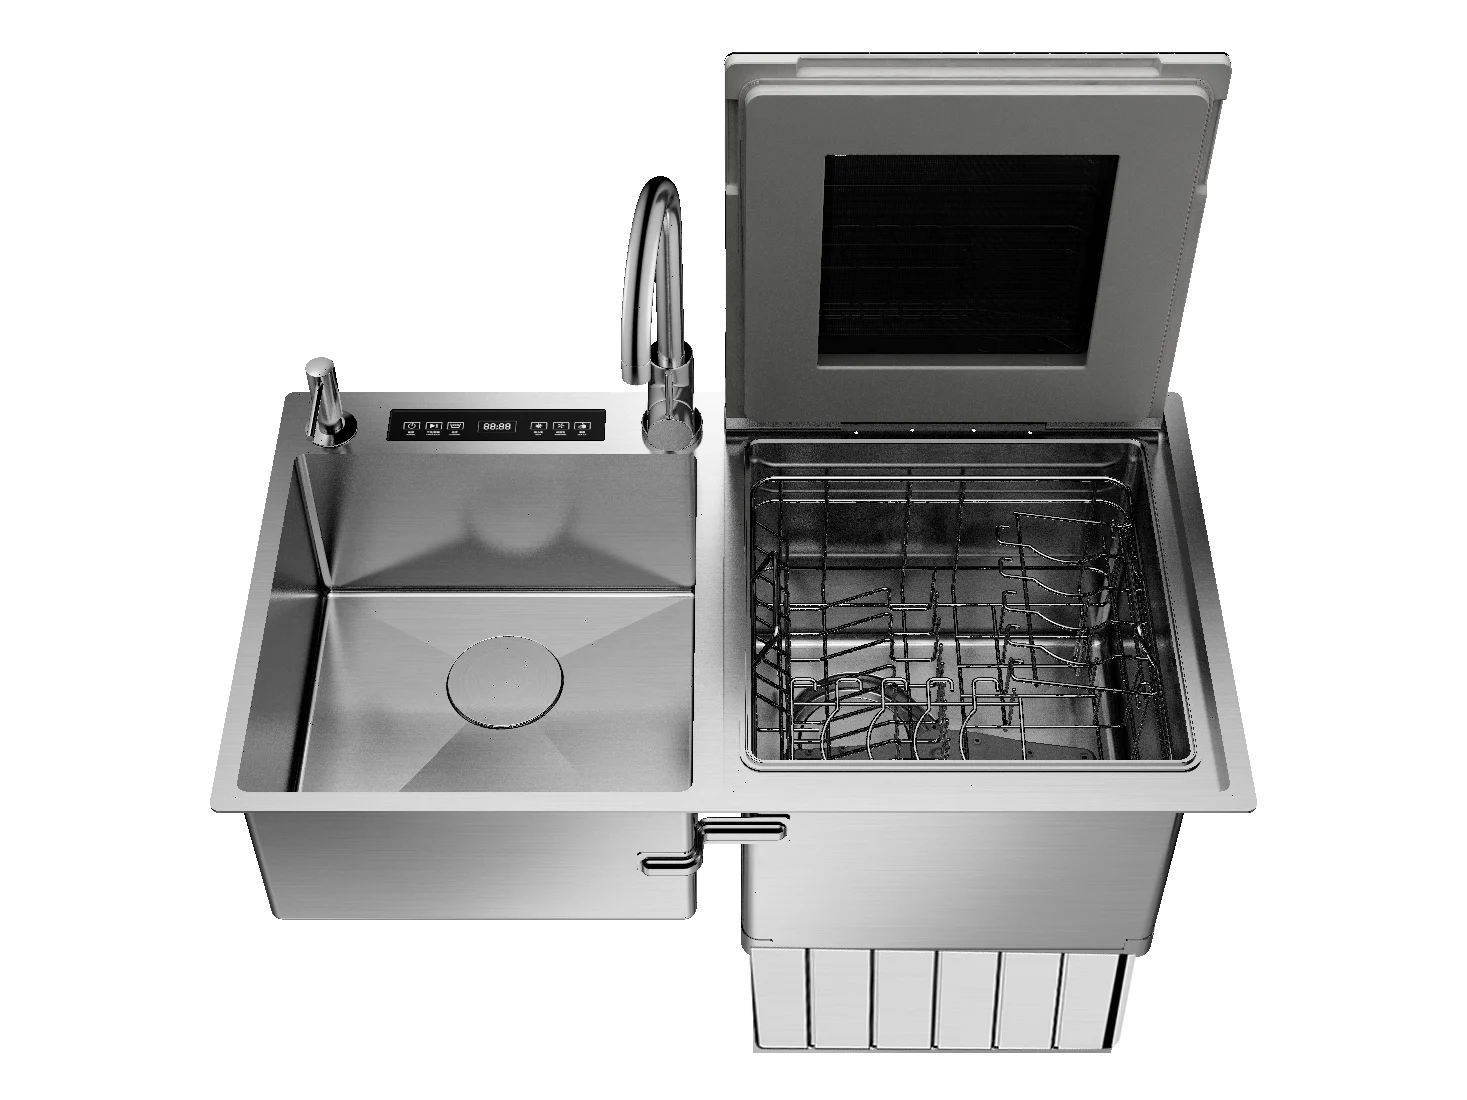 
Meiao Malaysia style automatic dishwashers stainless steel sink washing dish machine smart countertop dishwasher 